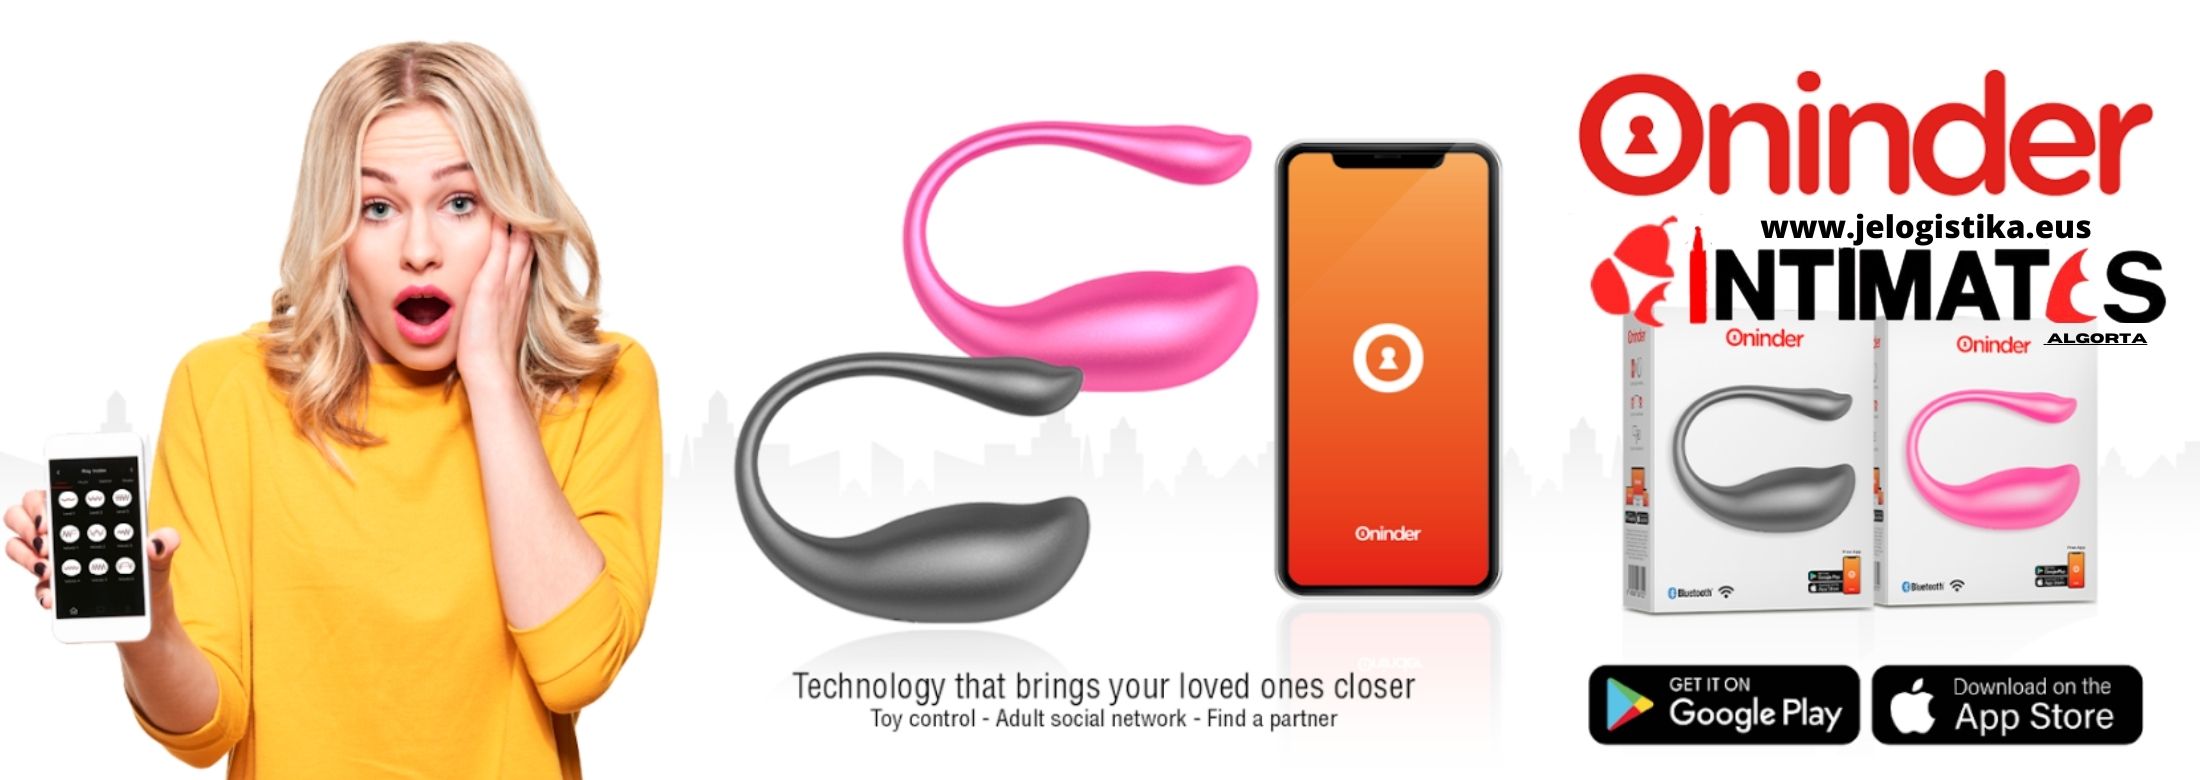 Huevos vibradores con App de Oninder, que puedes adquirir en intimates.es "Tu Personal Shopper Erótico Online"